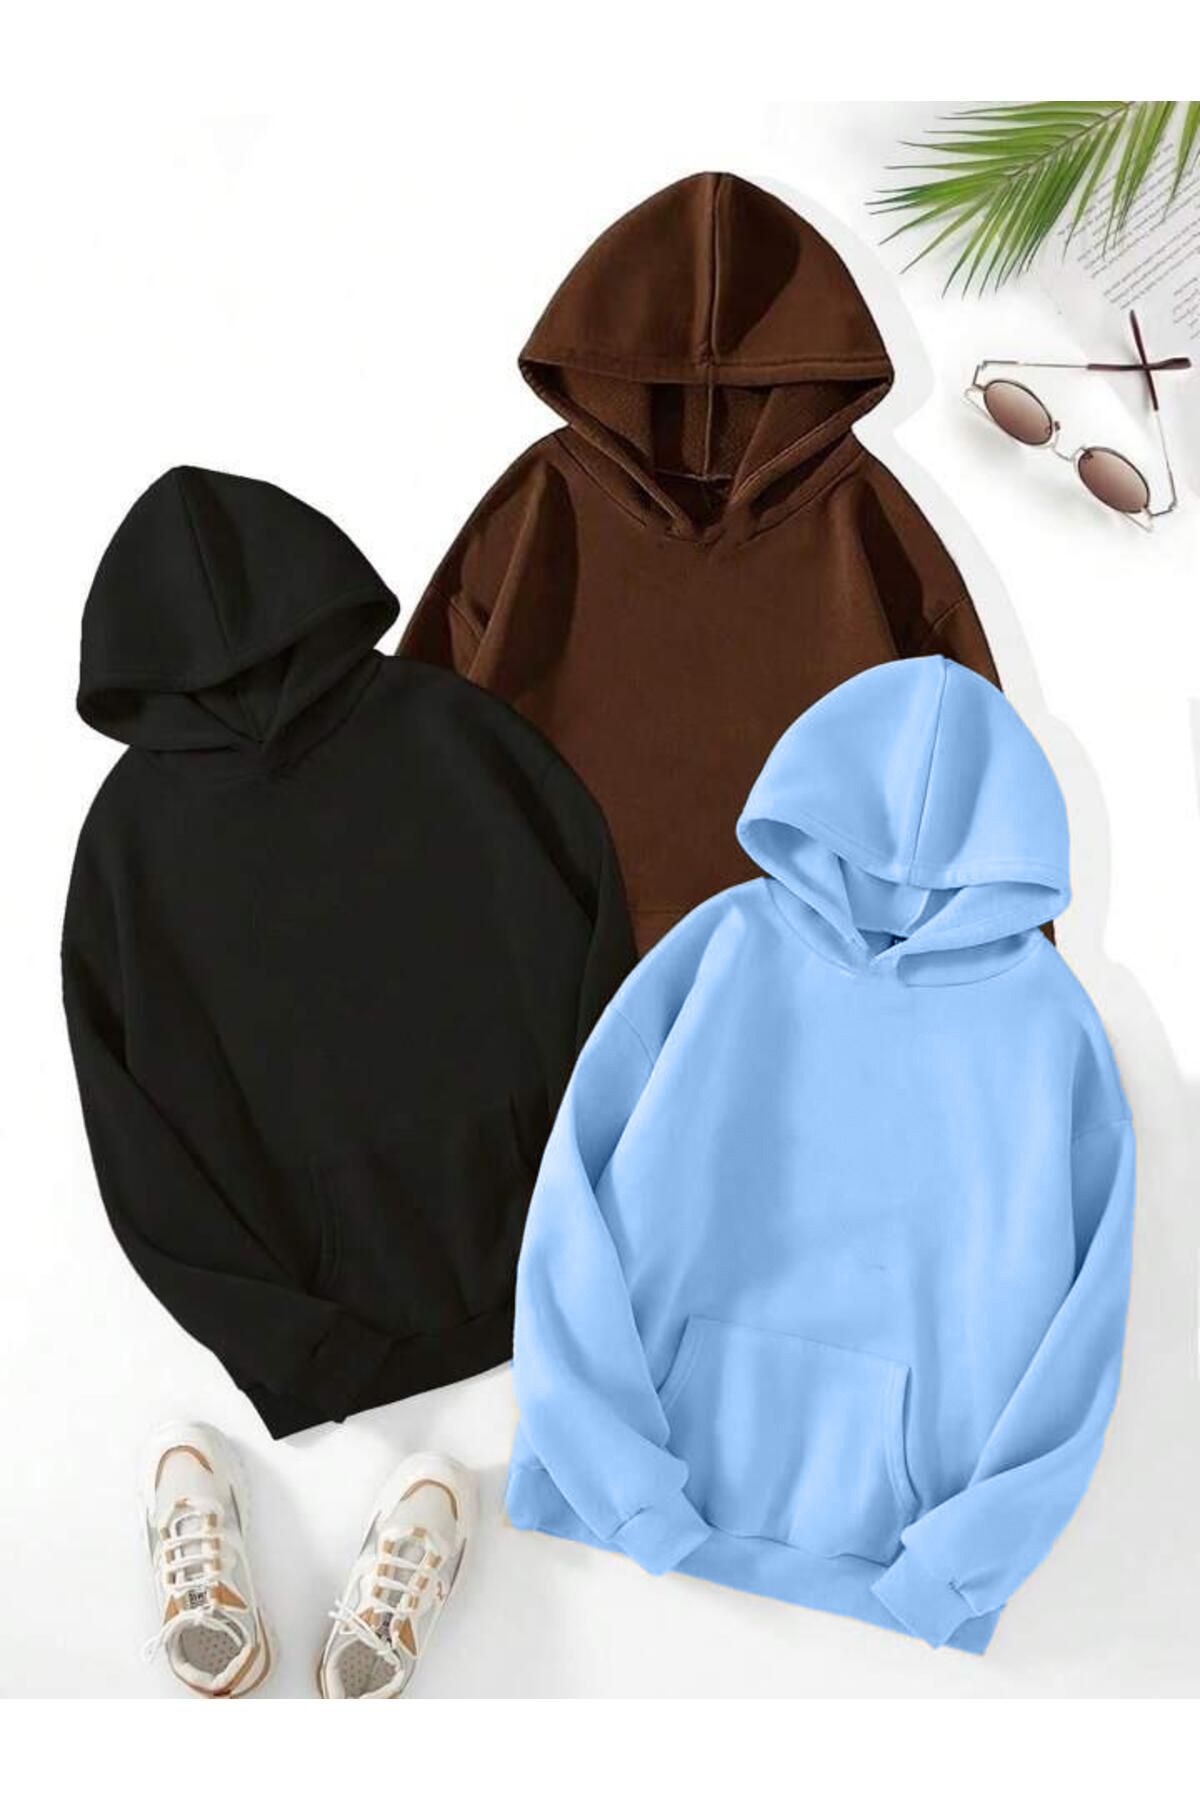 DUBU BUTİK 3'Lü Düz Basic Kalın Kışlık Sweatshirt - Siyah Kahverengi Bebe Mavisi Oversize Kapüşonlu